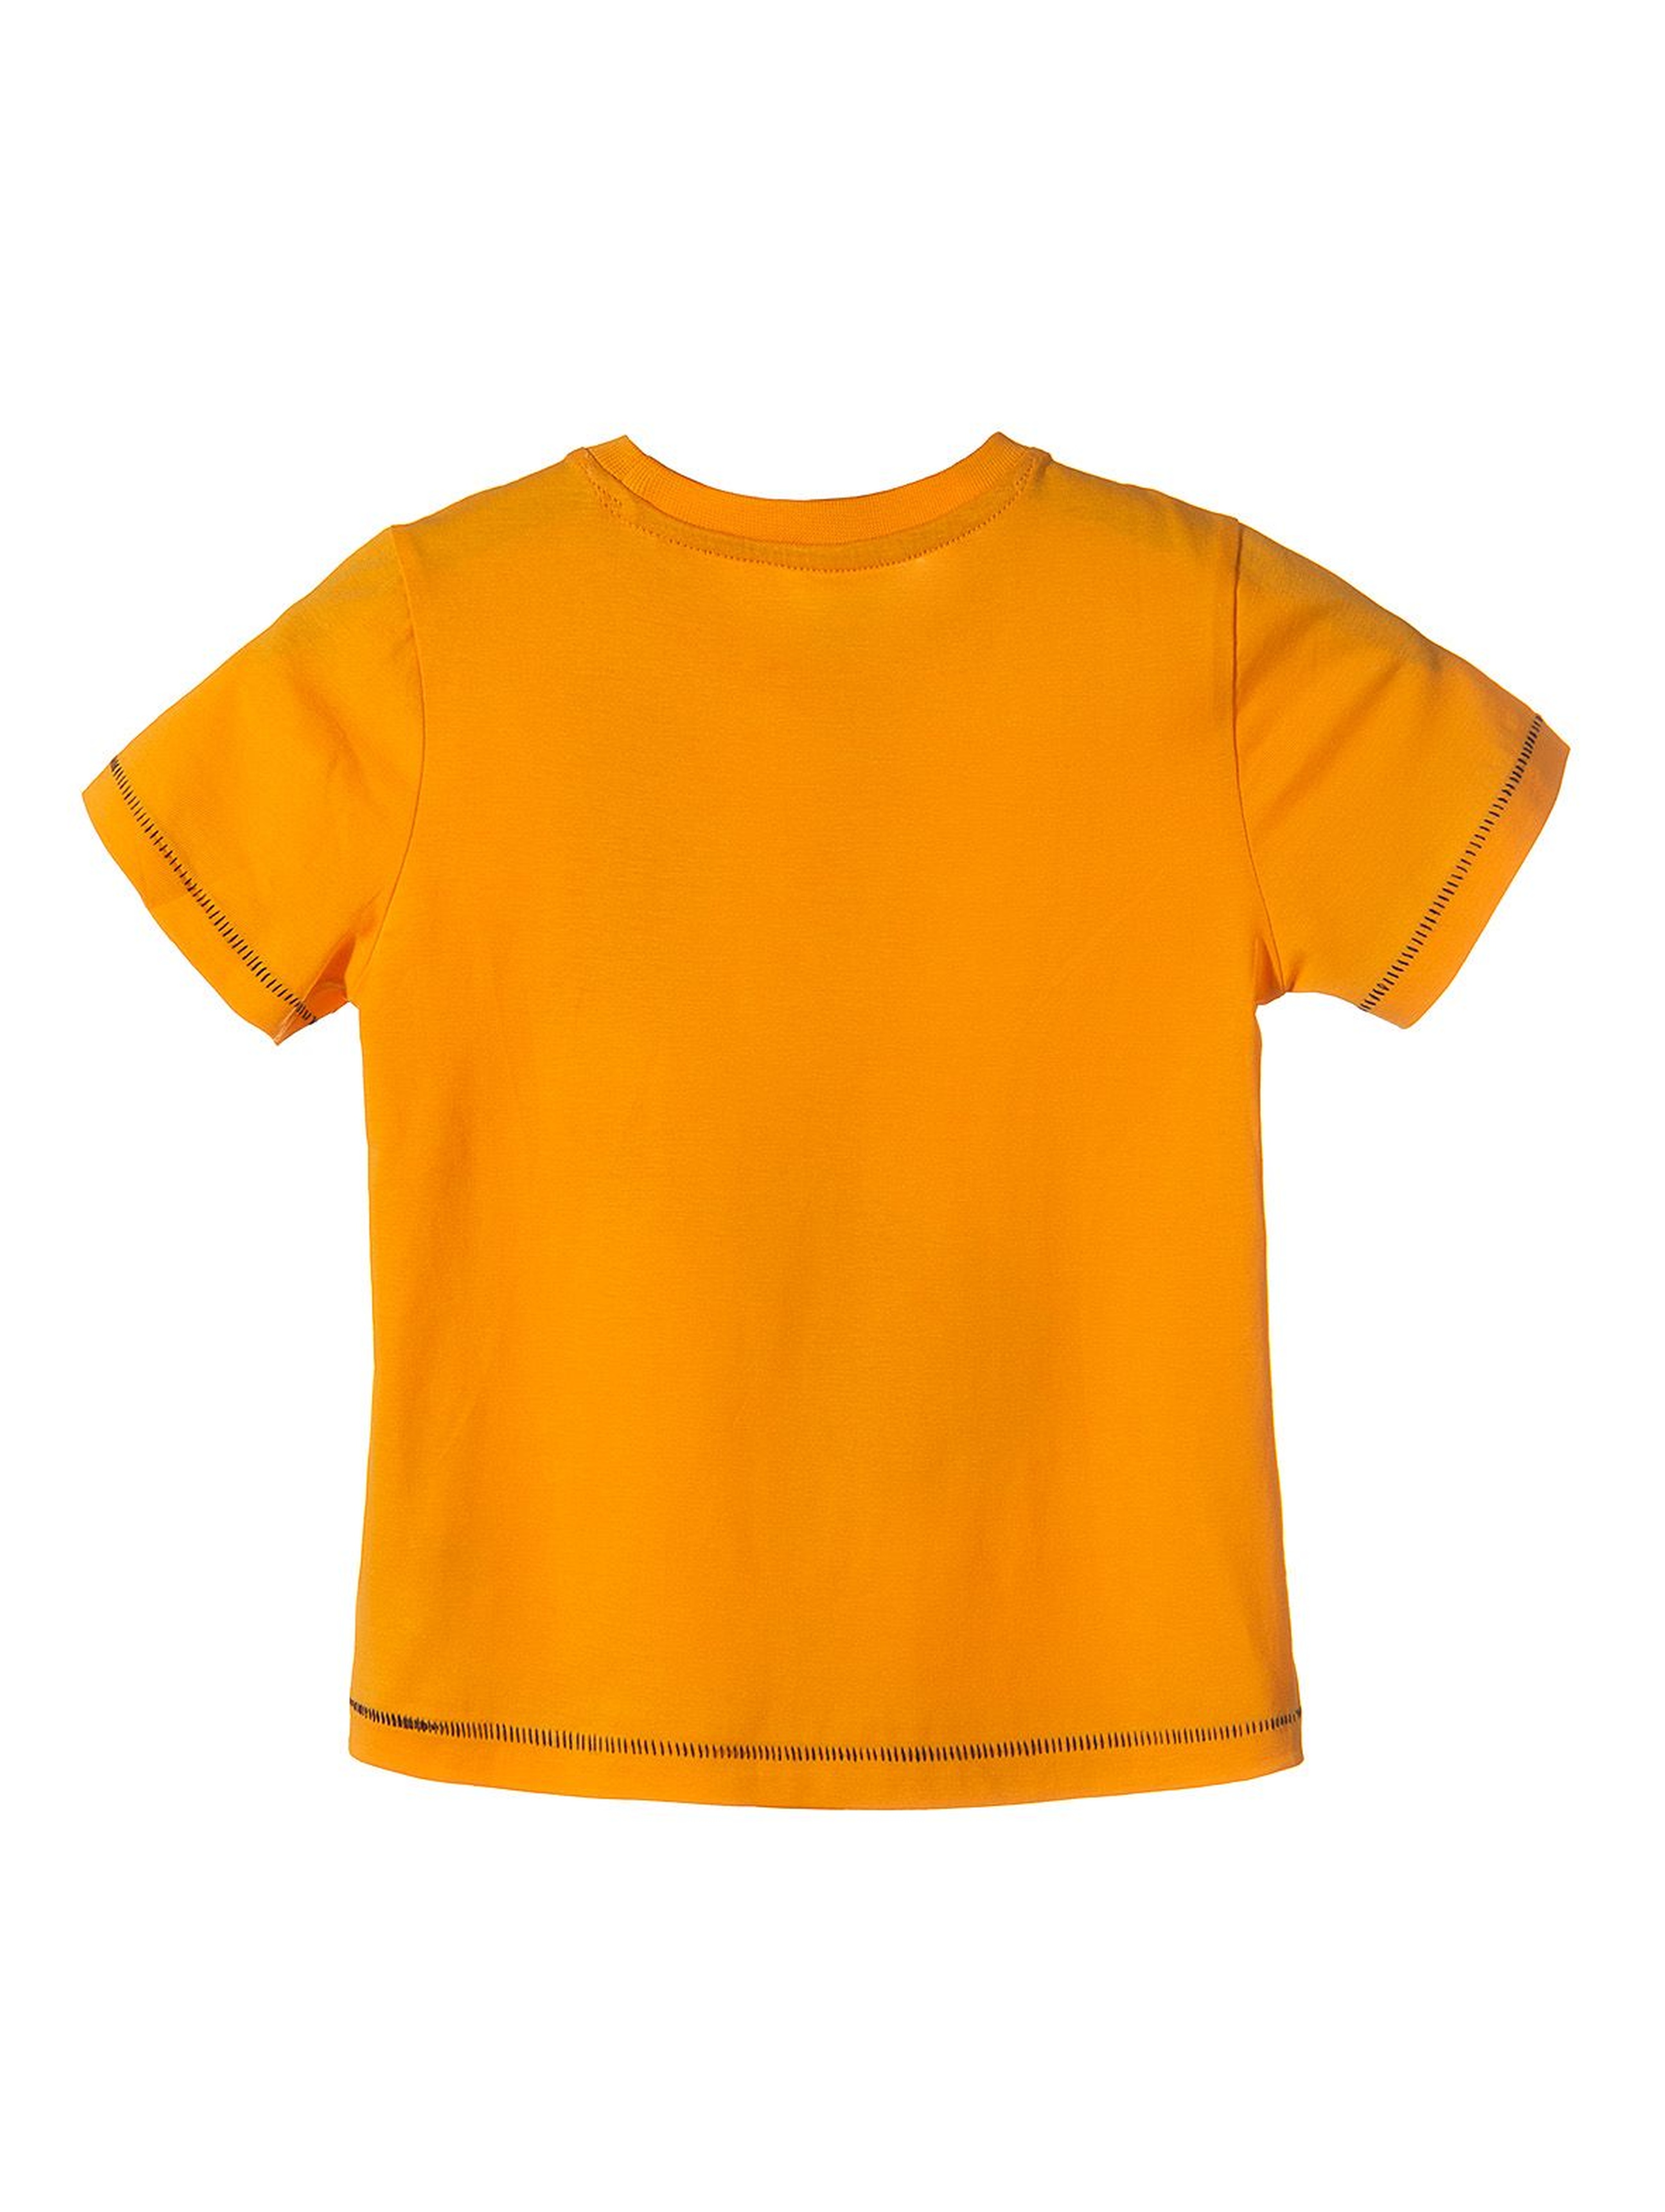 T-shirt dla chłopca- reaguje na promienie słoneczne